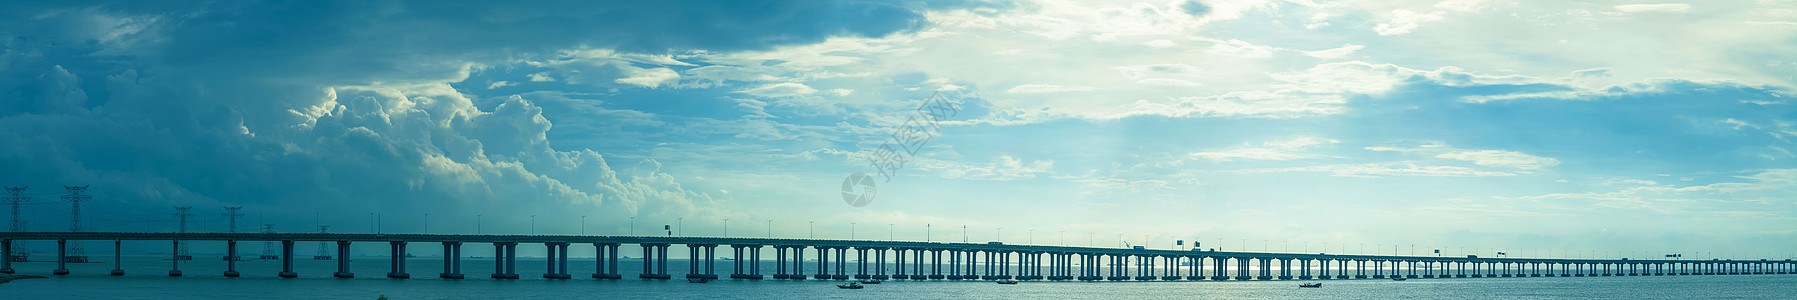 桥吊高速公路跨海大桥背景